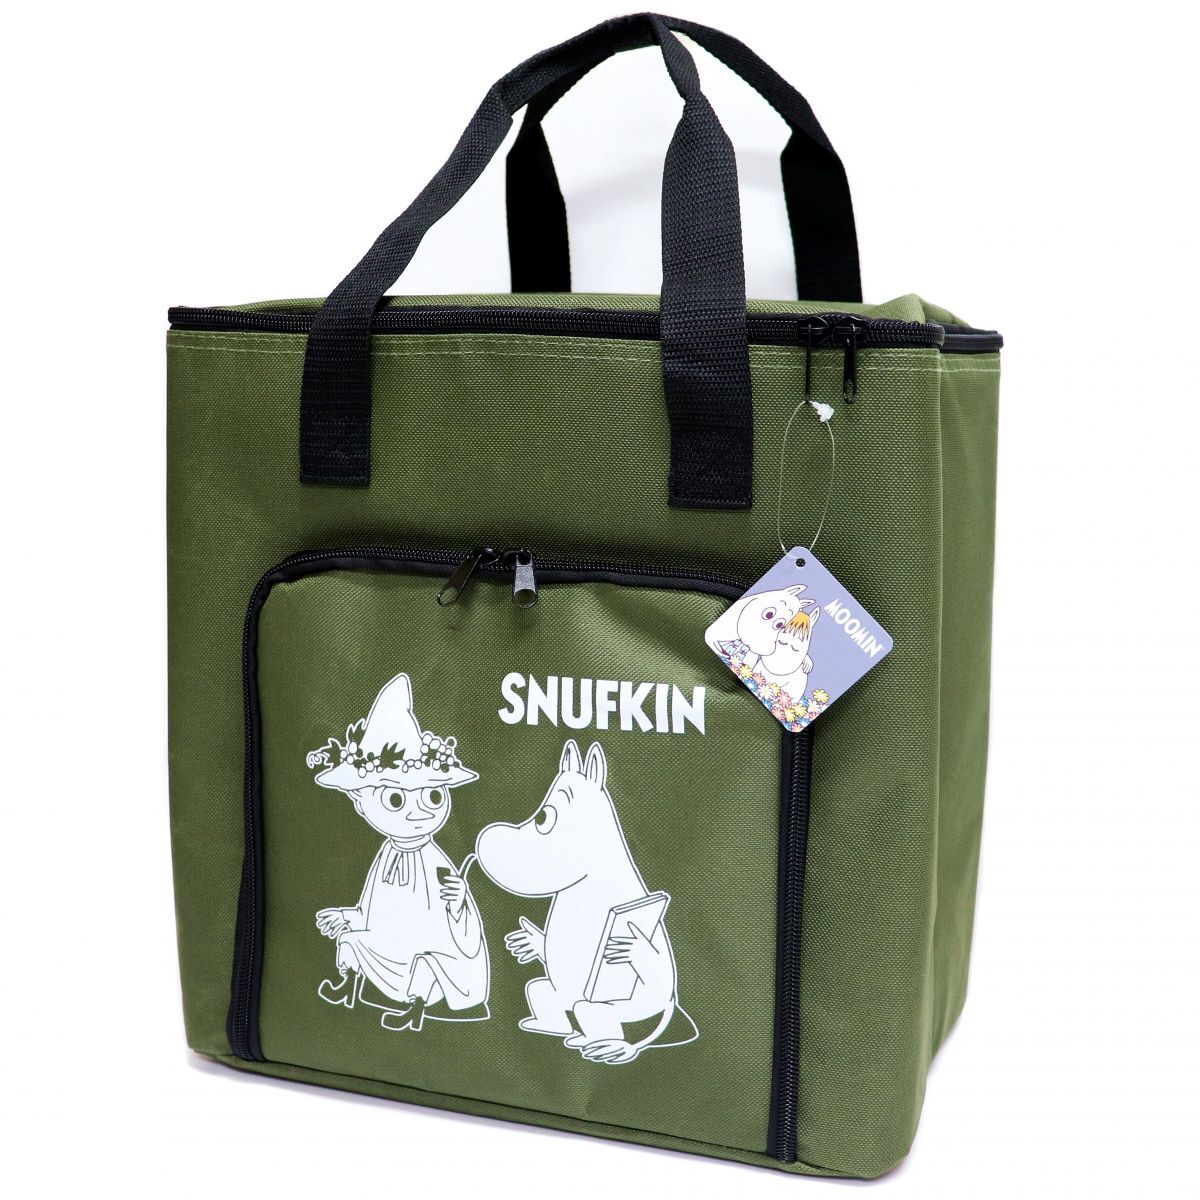 * Moomin MOOMINsnaf gold новый товар удобный большая вместимость термос мульти- сумка сумка-холодильник BAG портфель сумка хаки [MOOMINB-KHA1N] один шесть *QWER*